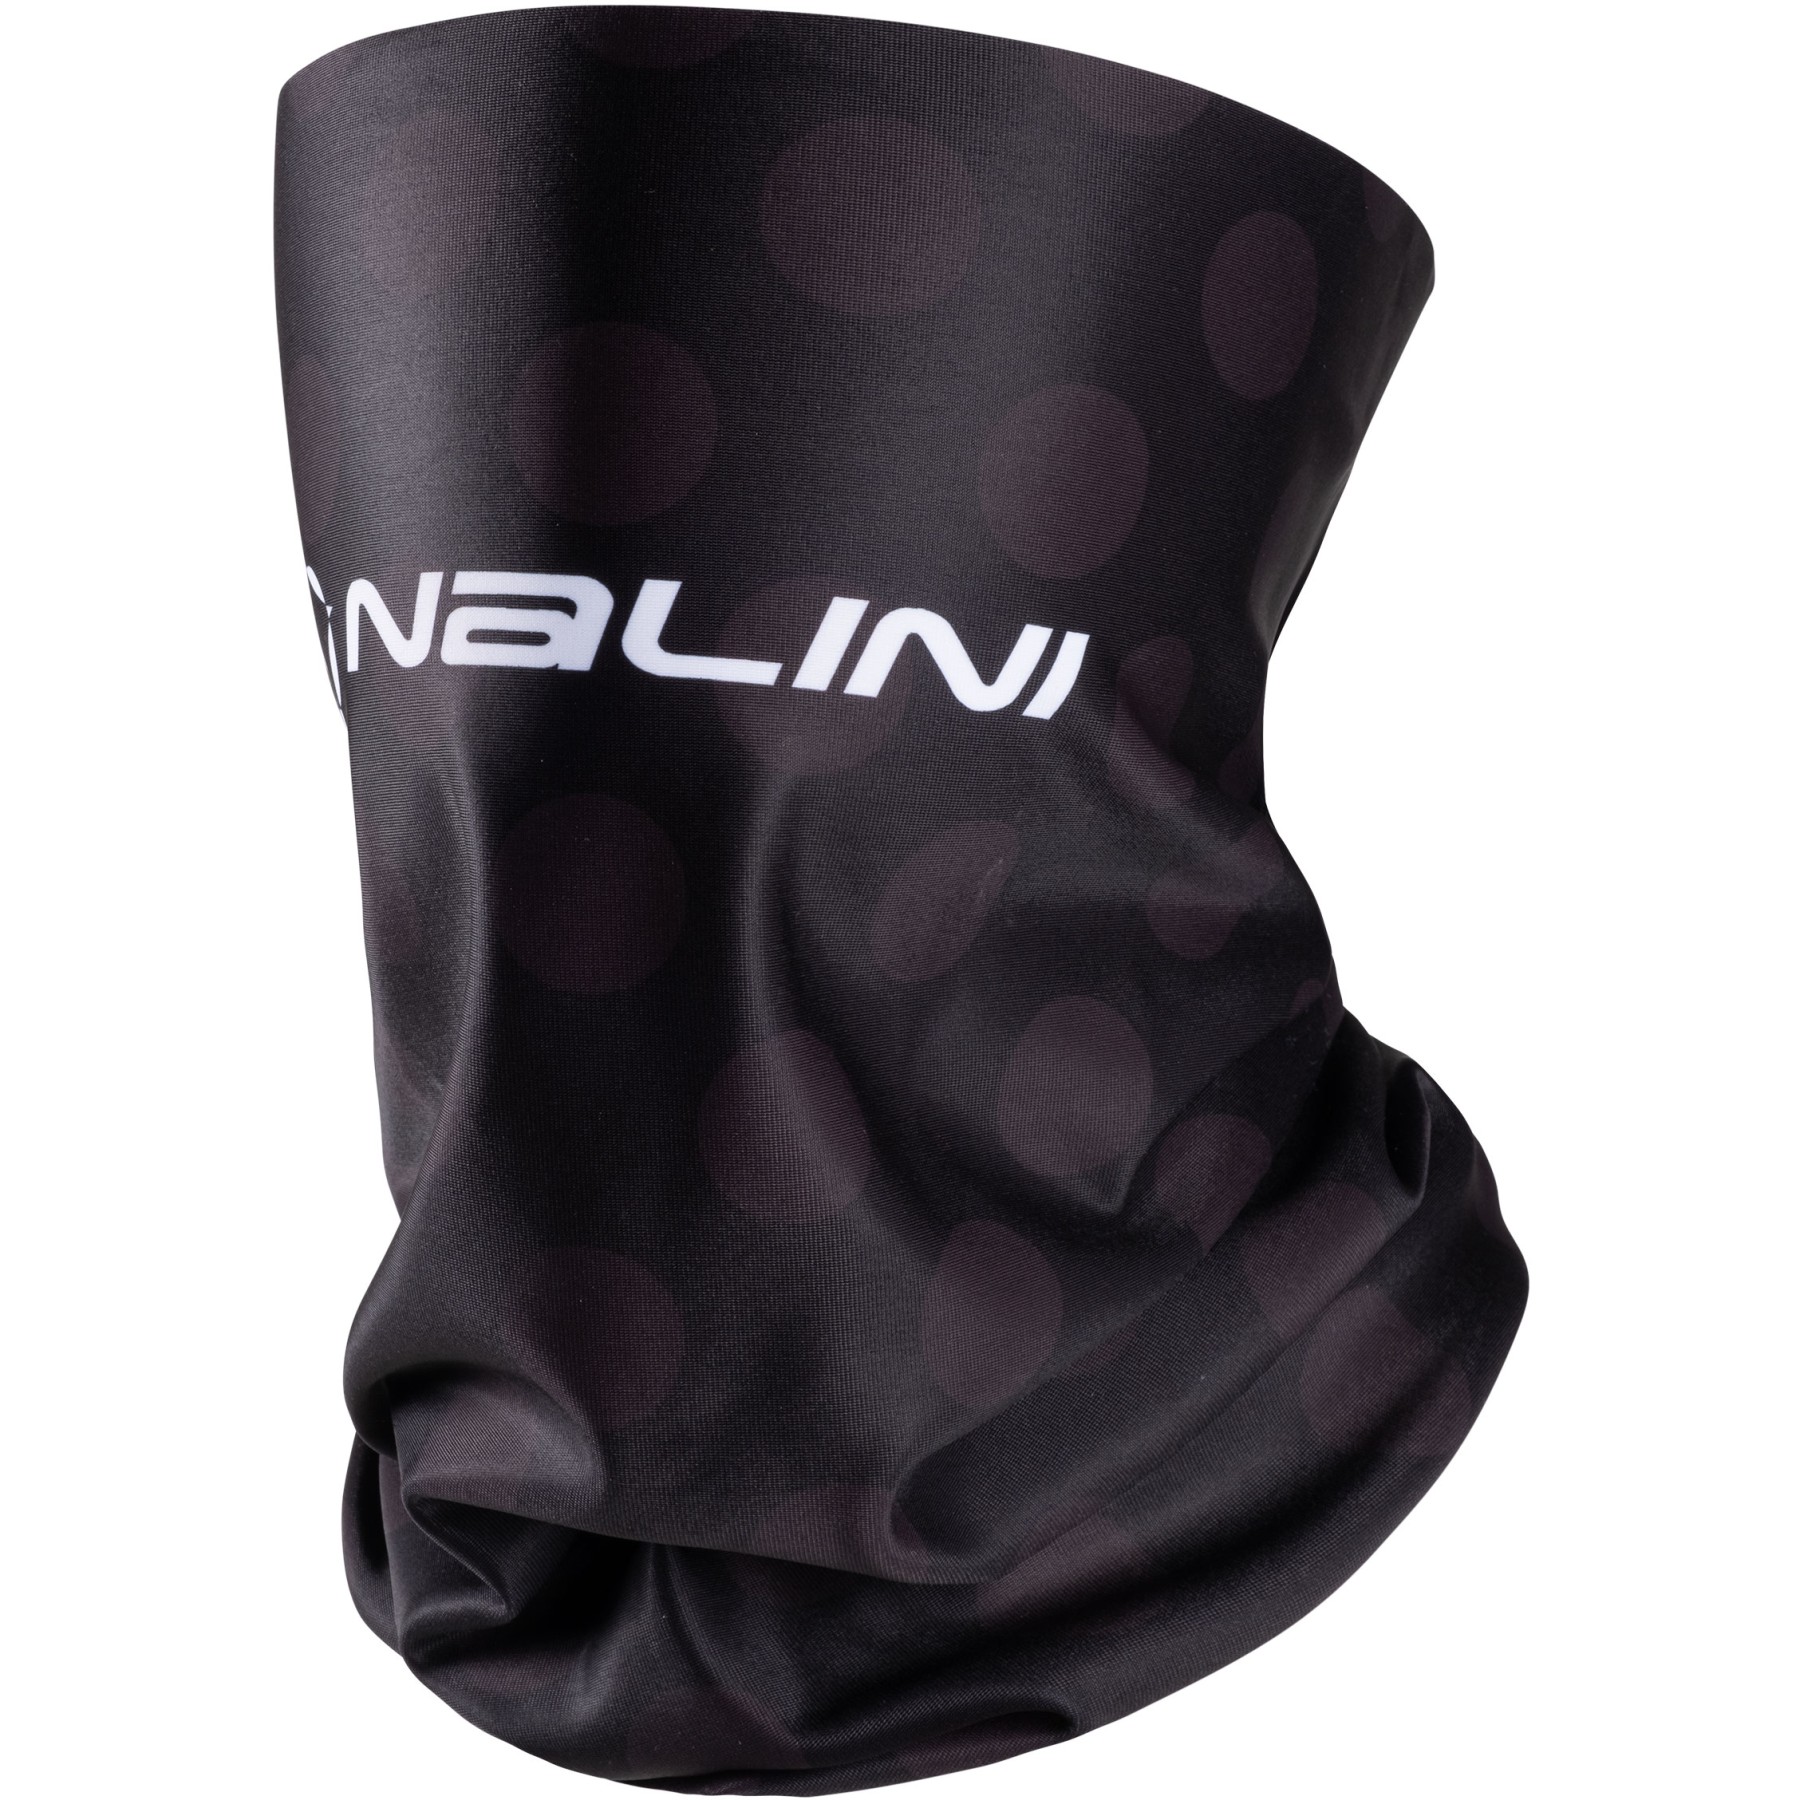 Produktbild von Nalini New Winter Schlauchschal - black/pois 4010